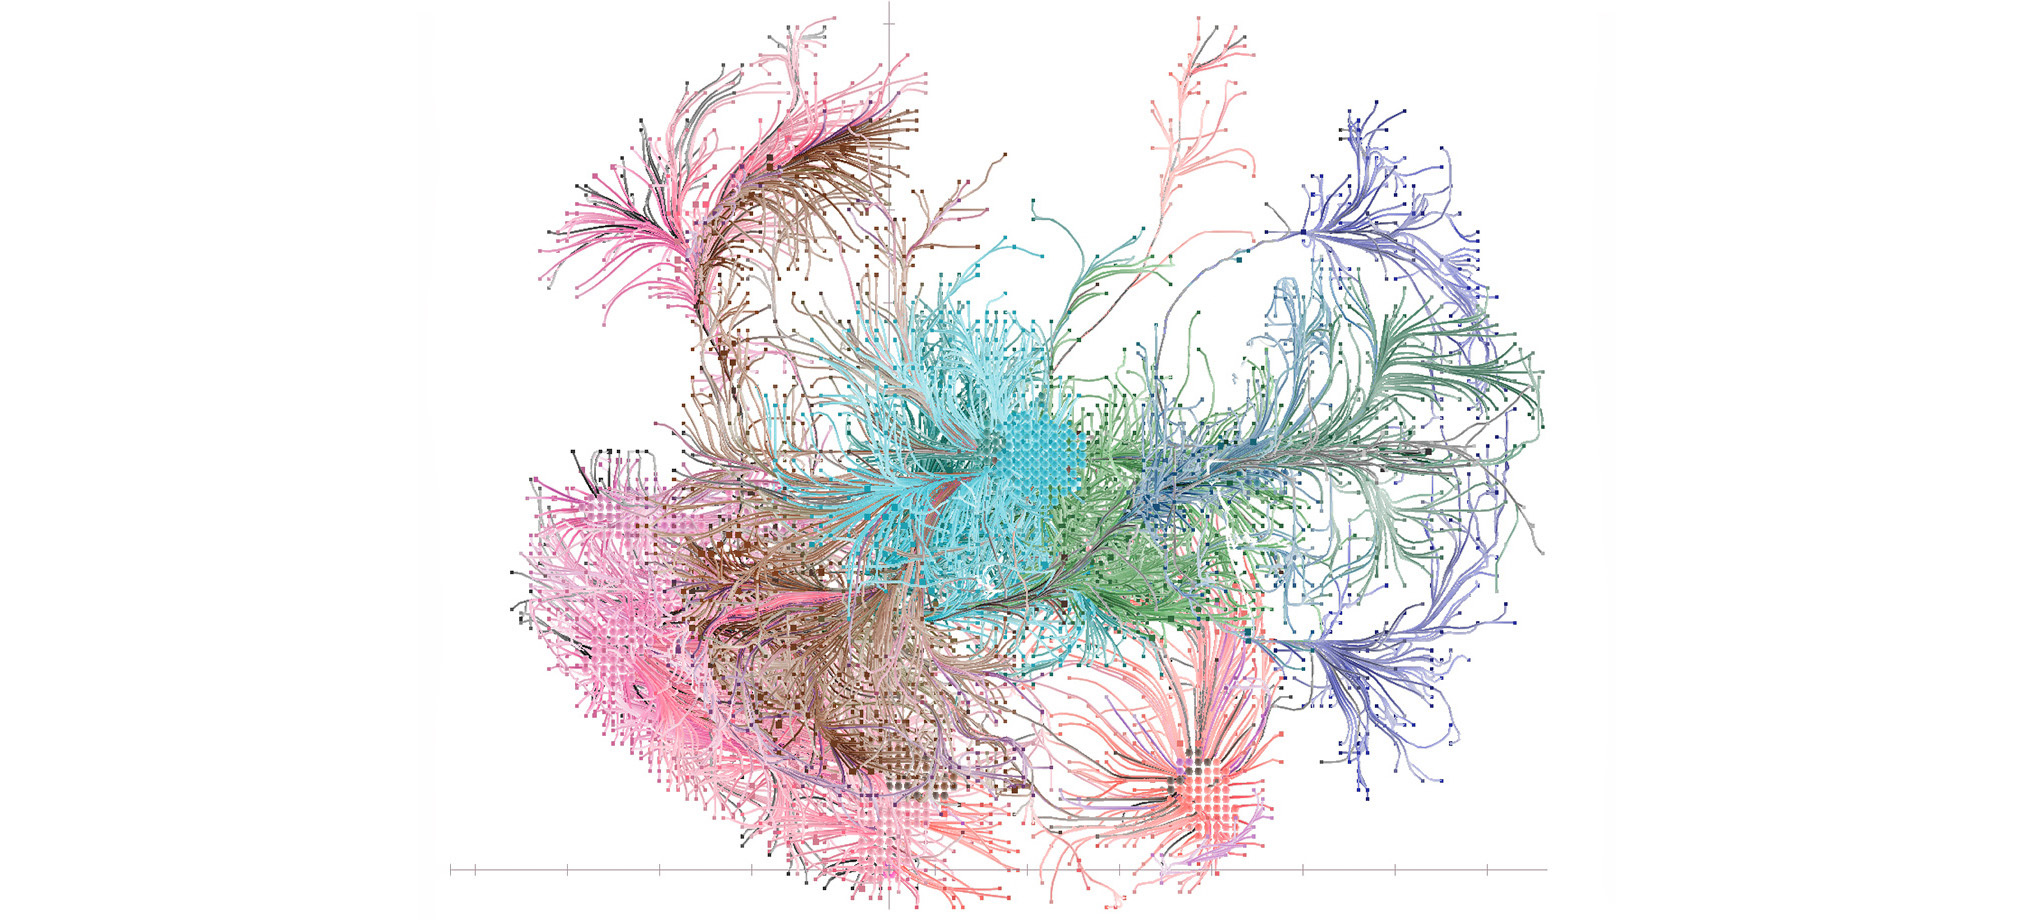 A denser graph network